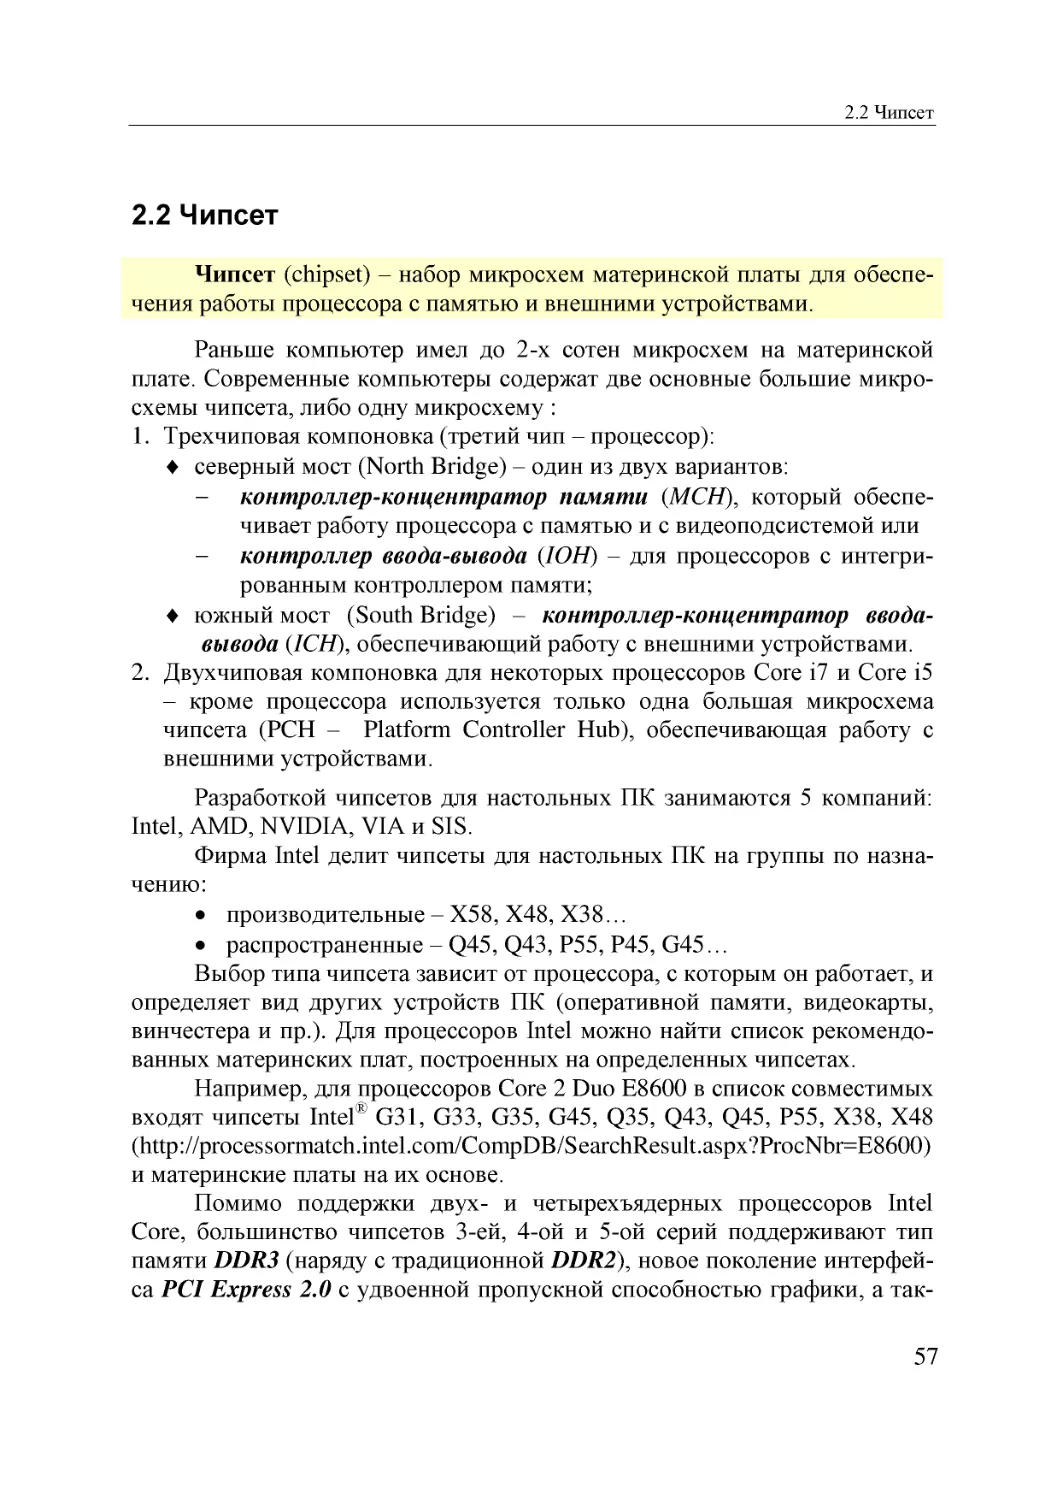 Informatika_Uchebnik_dlya_vuzov_2010 57